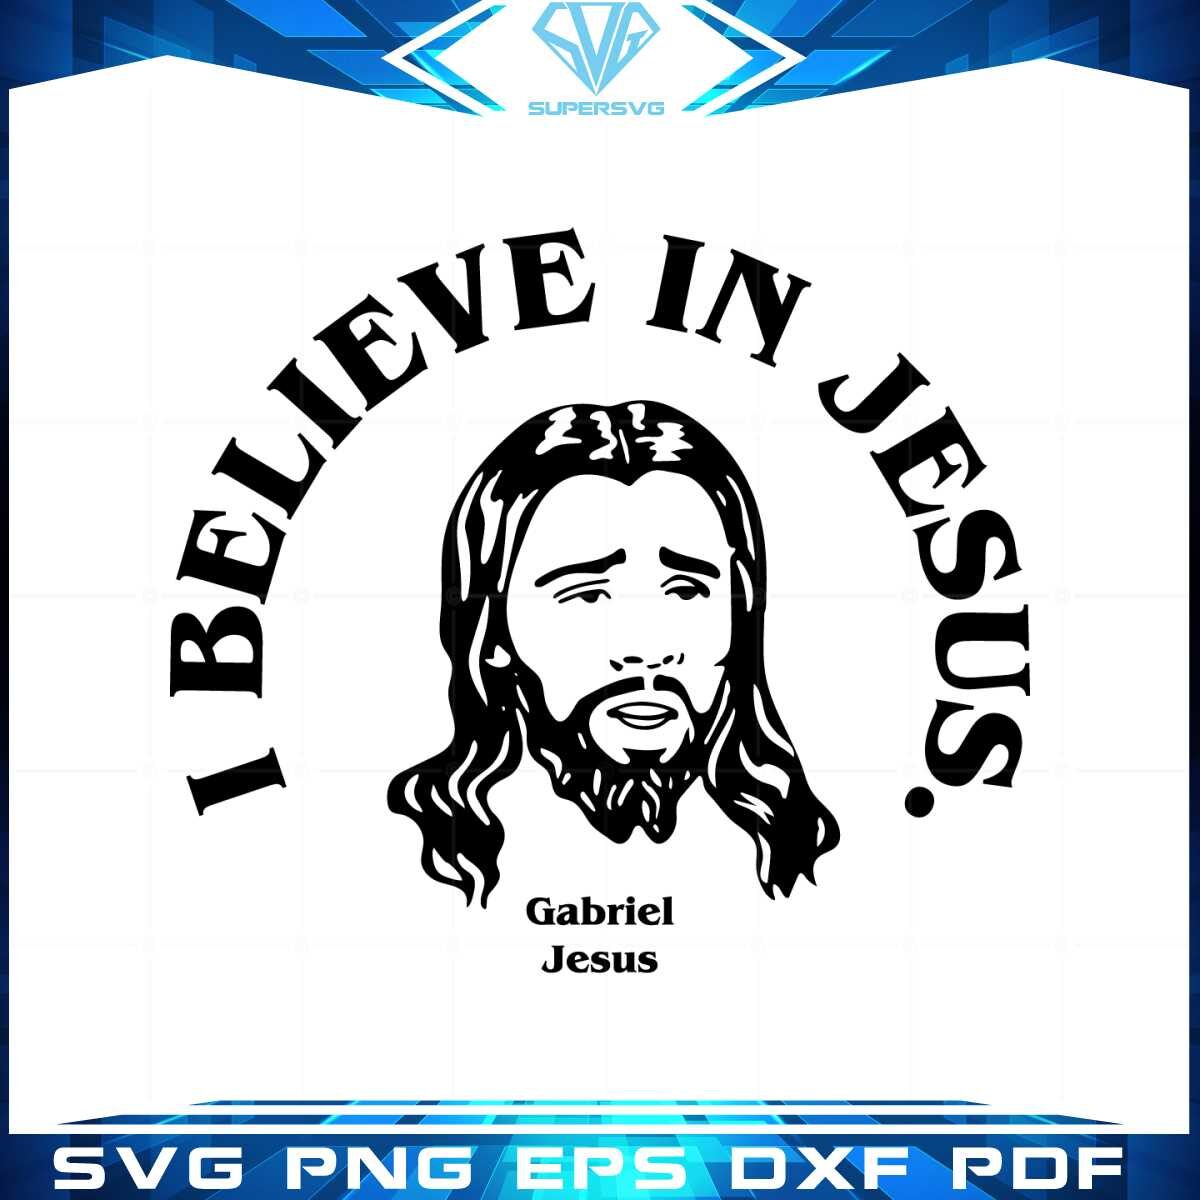 gunners-i-believe-in-jesus-gabriel-jesus-svg-graphic-designs-files